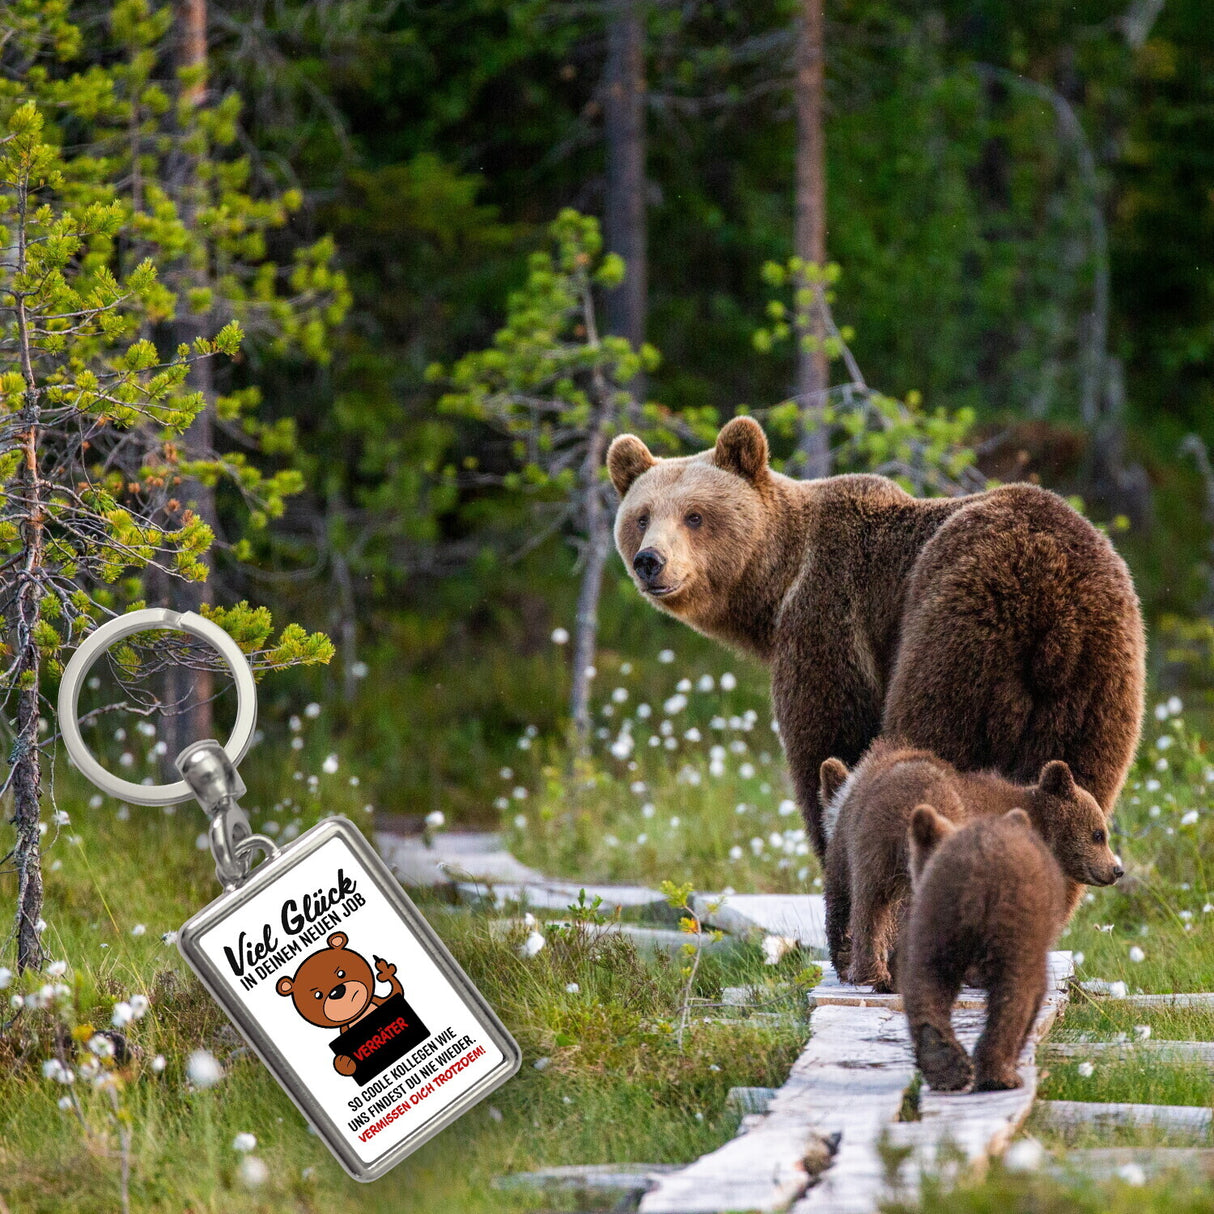 Glückwunsch zur Flucht, Verräter Mittelfinger Schlüsselanhänger mit Bär